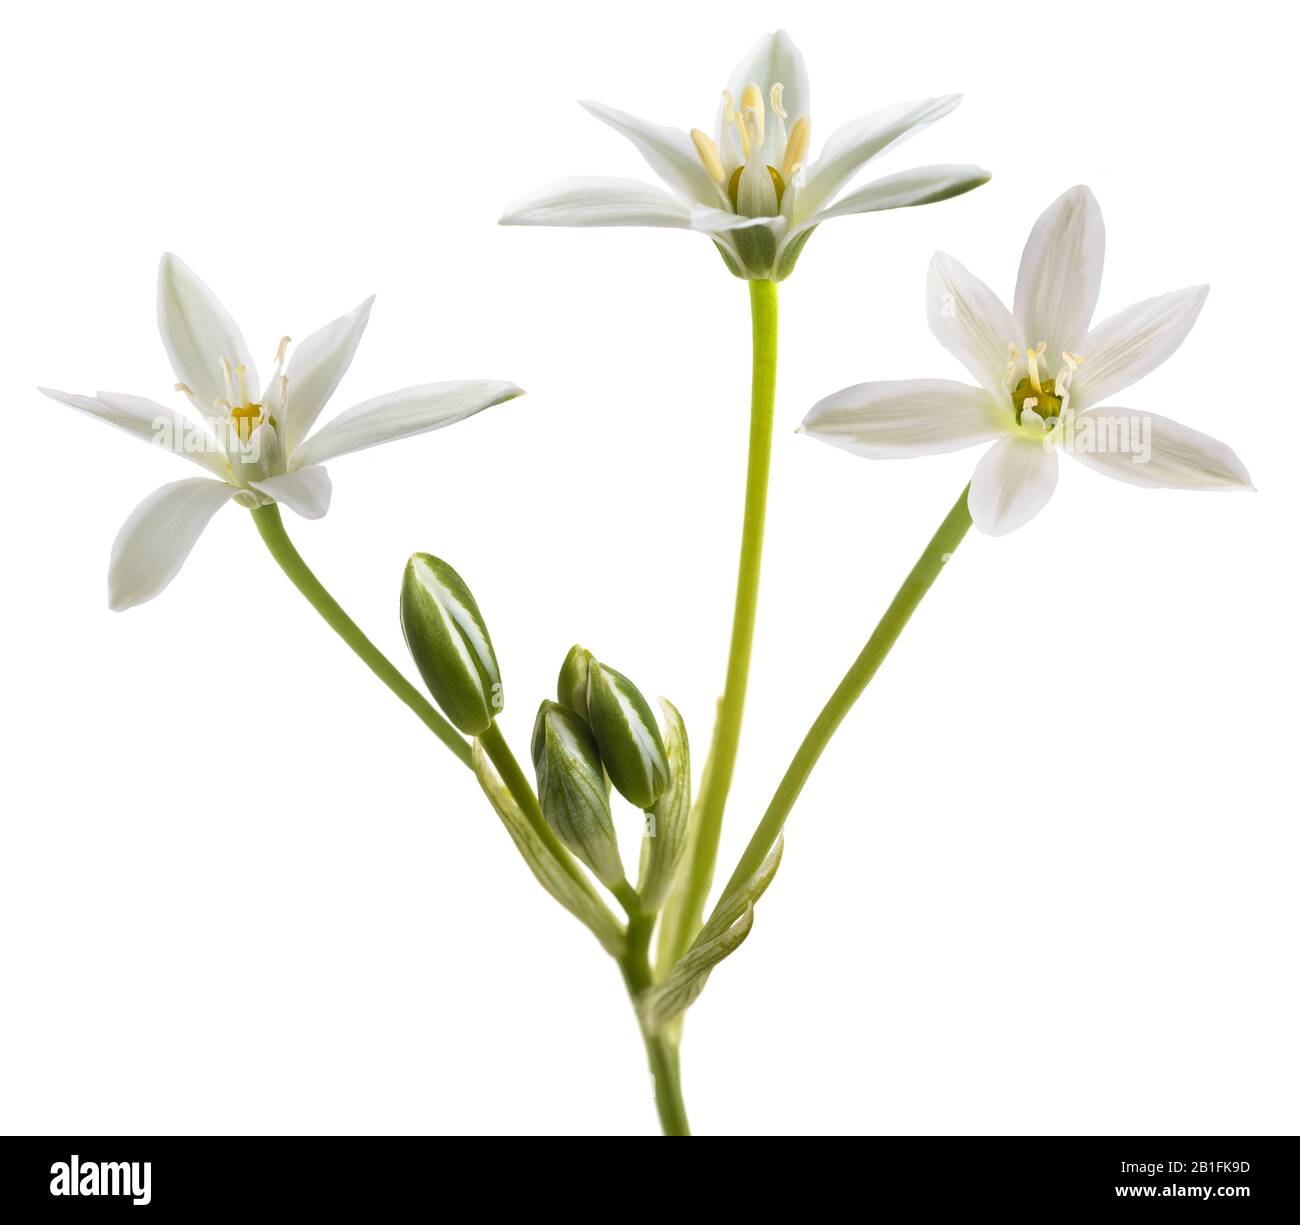 White Grass Lily (Ornithogalum umbellatum) Flowers isolated on White Background Stock Photo